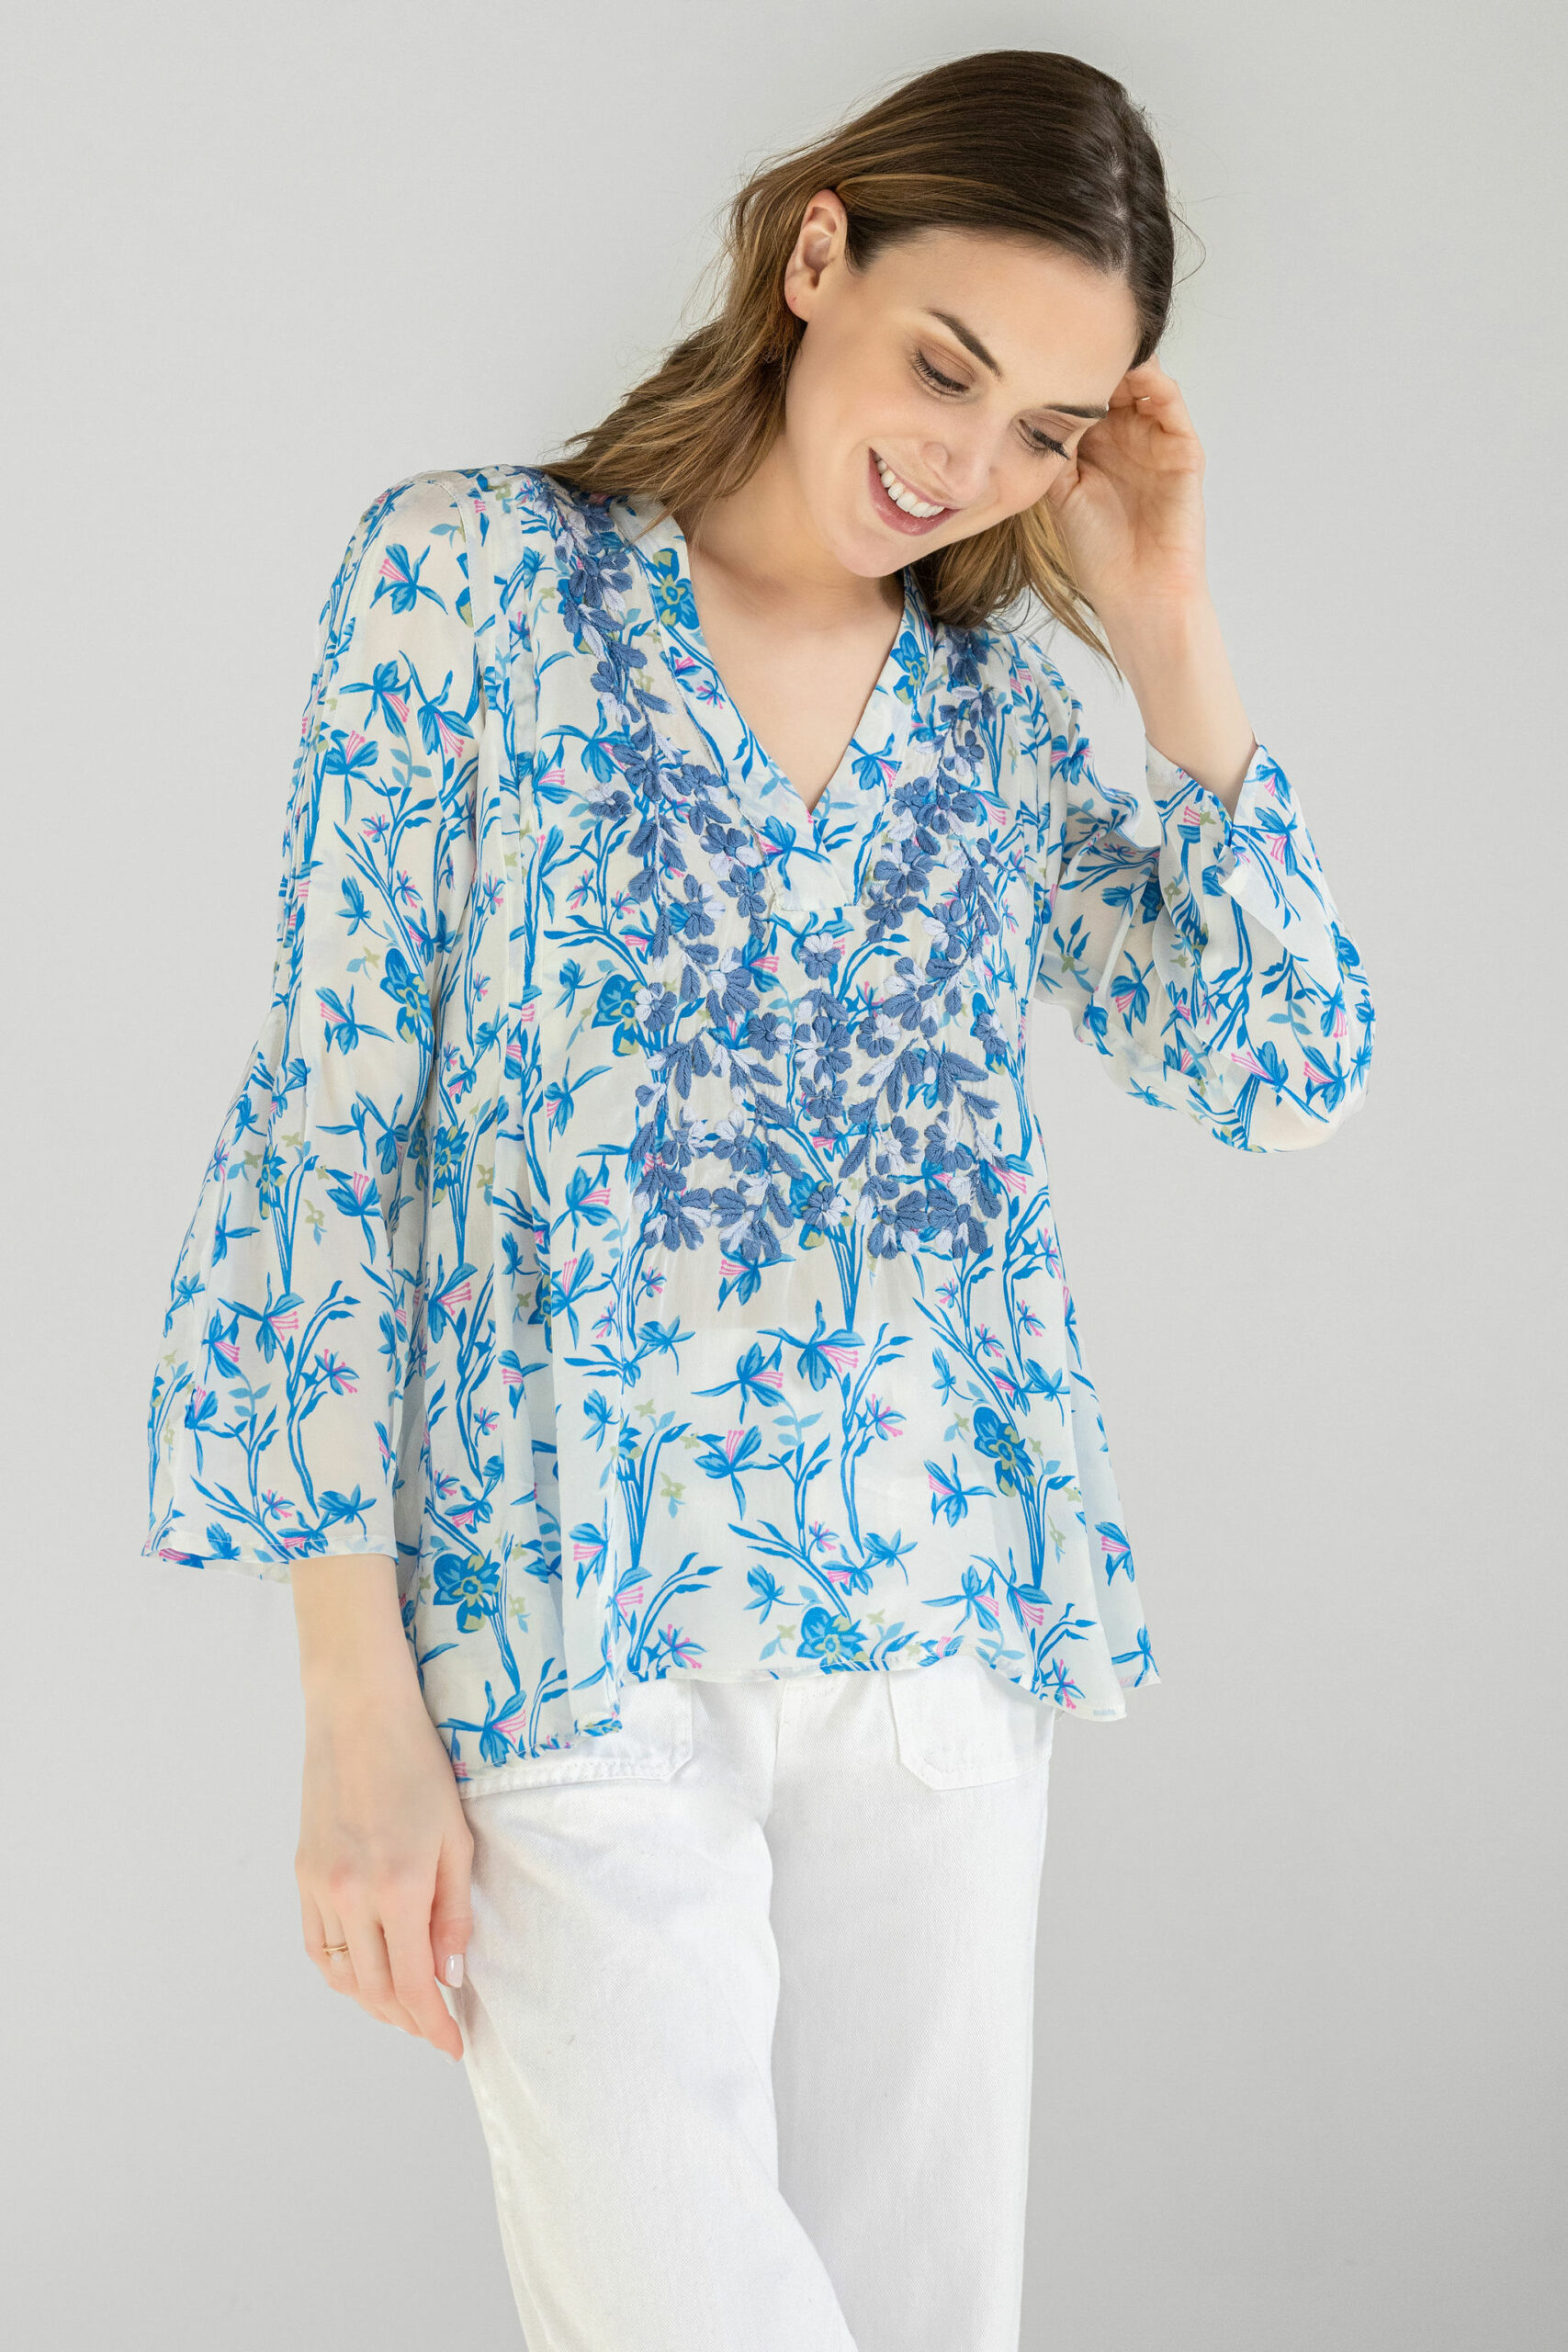 Briar Royal Blue and White Silk Crepe Pin-tuck Shirt - Amaya Textiles